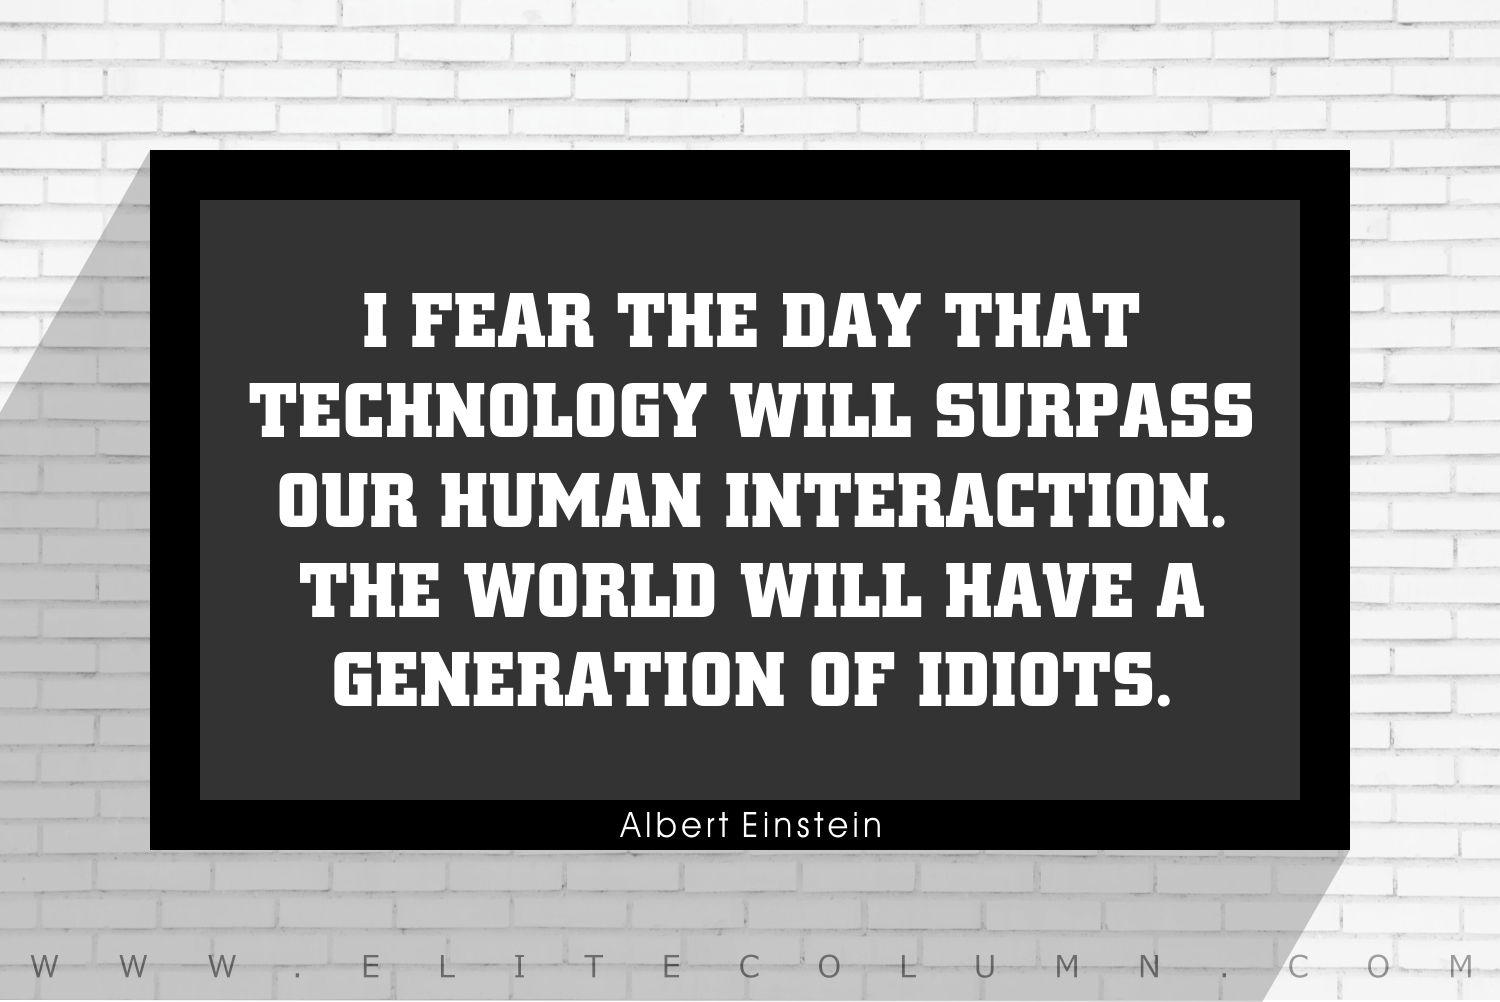 albert einstein quotes about technology